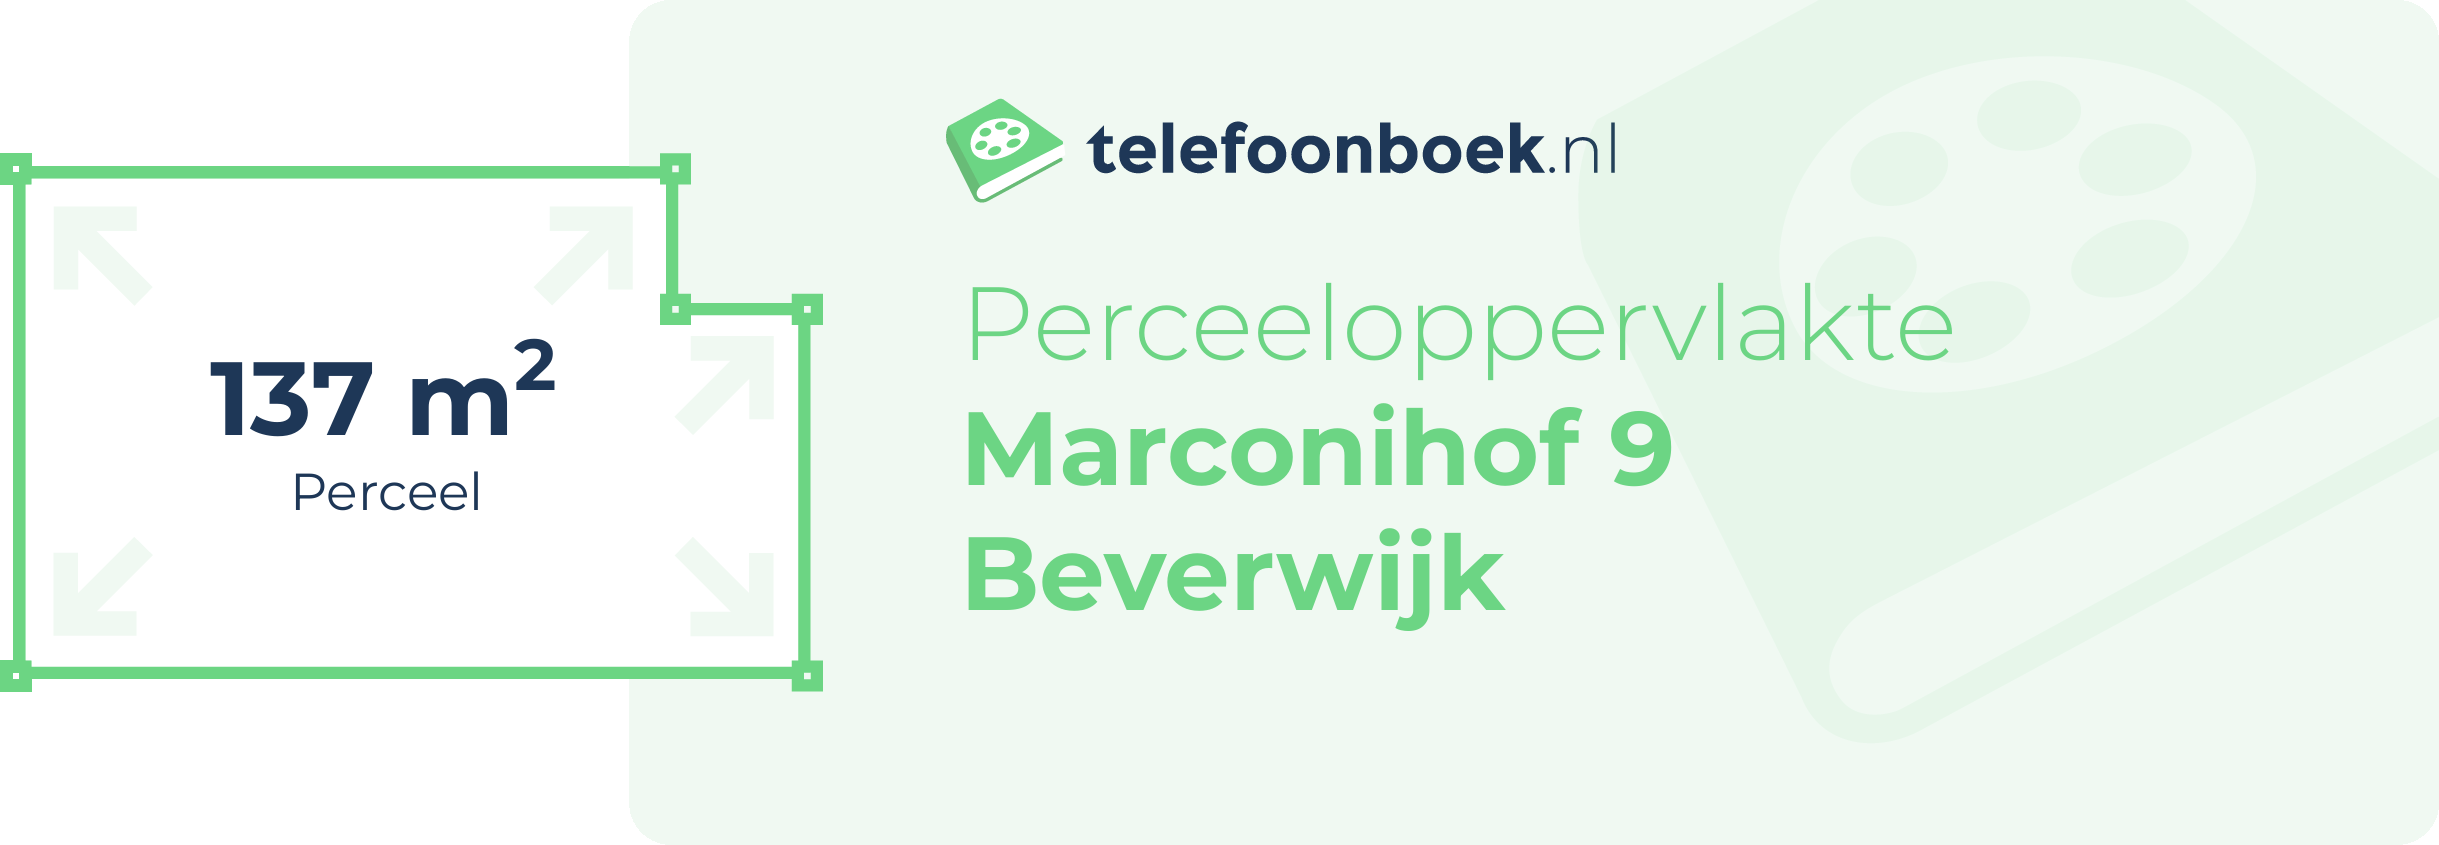 Perceeloppervlakte Marconihof 9 Beverwijk